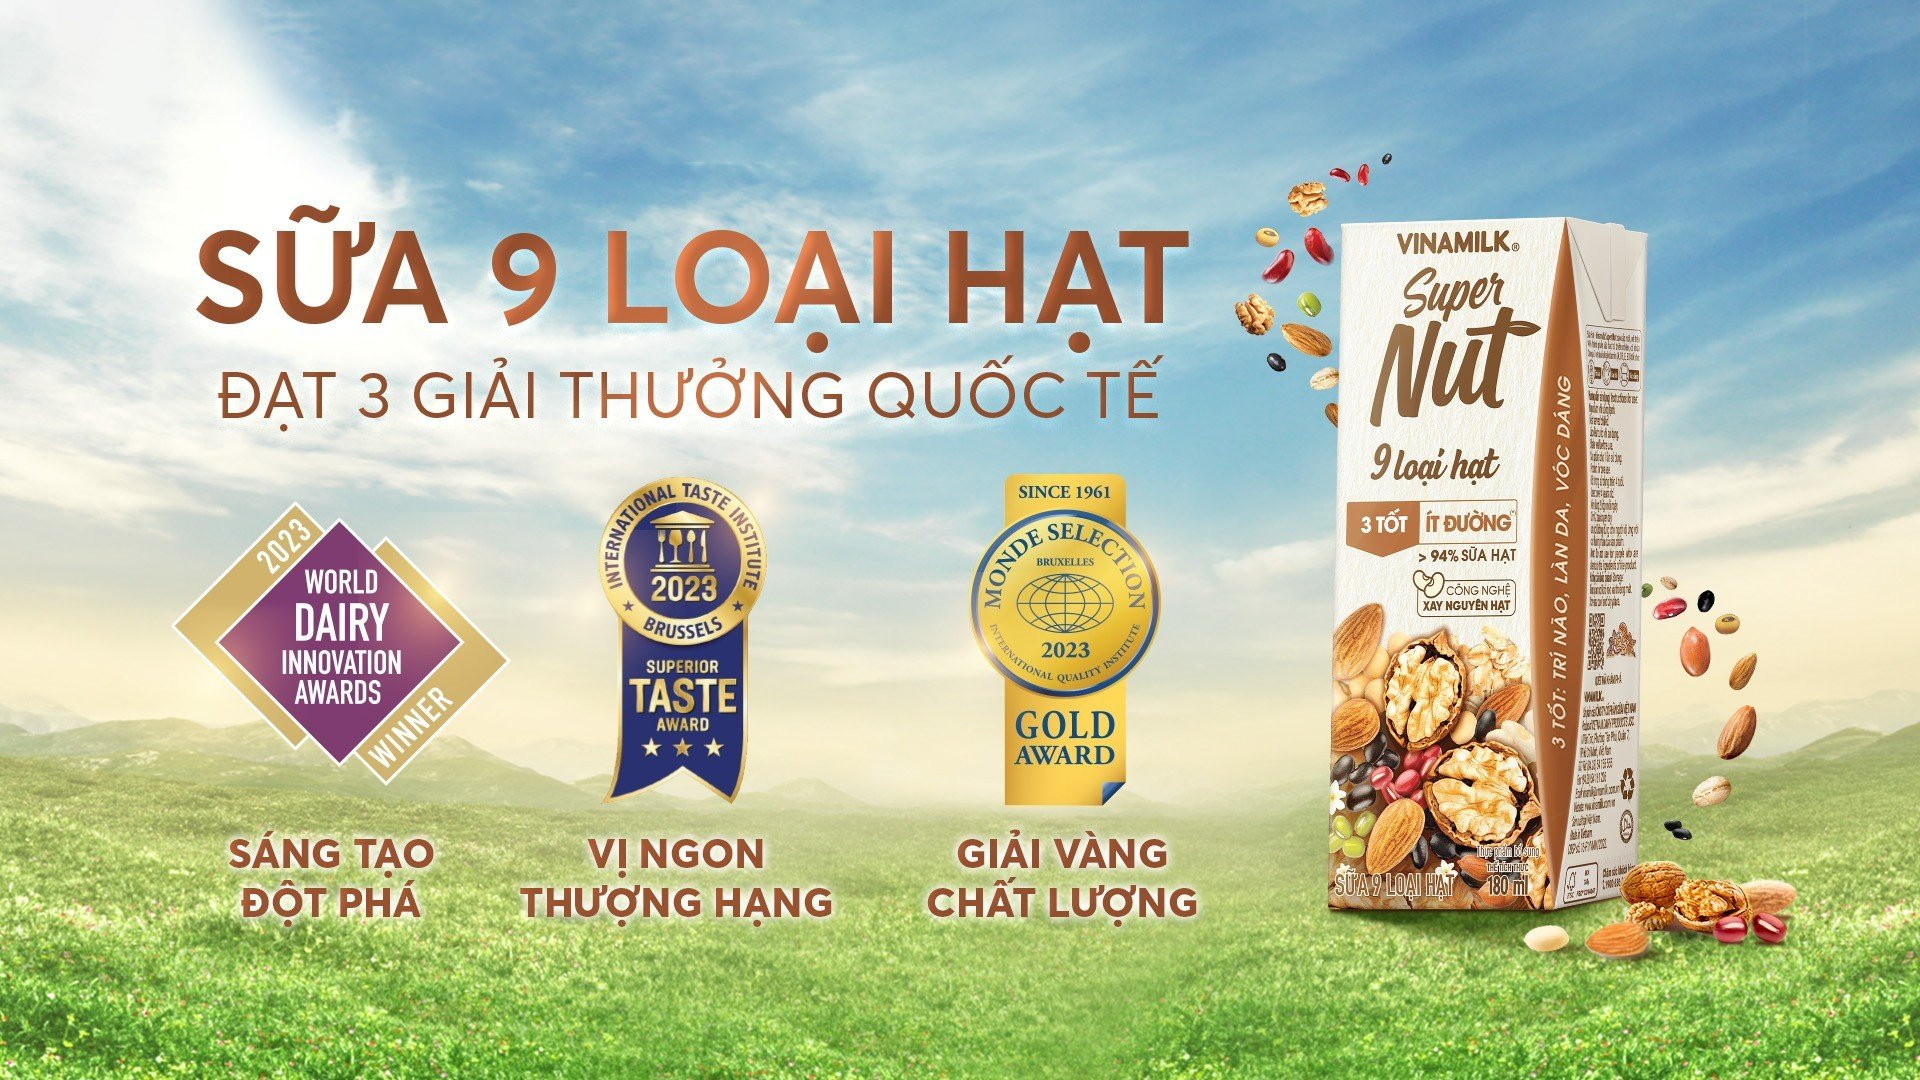 Sữa hạt Vinamilk Supernut dành cú ''Hat-trick'' giải thưởng quốc tế về sáng tạo, vị ngon và chất lượng » Báo Phụ Nữ Việt Nam